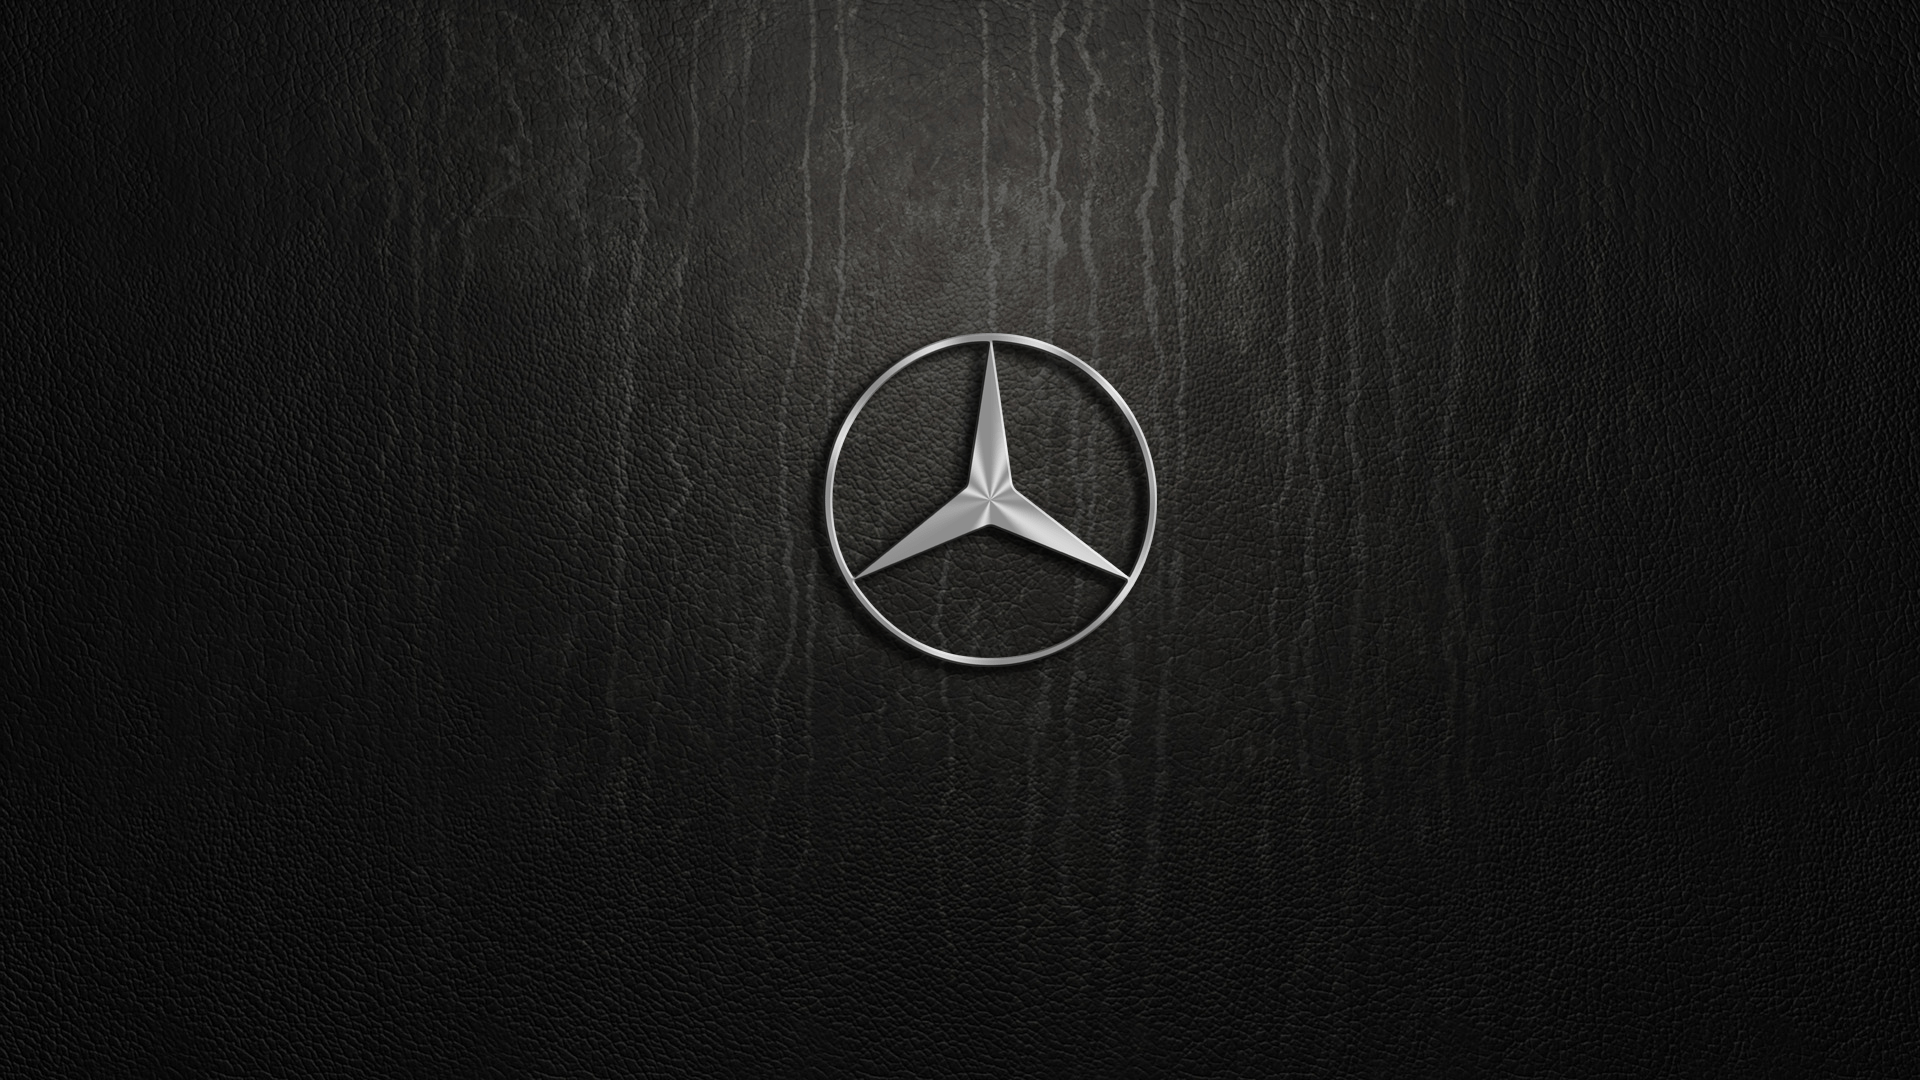 Mercedes Desktop Wallpapers - Top Free Mercedes Desktop Backgrounds ...